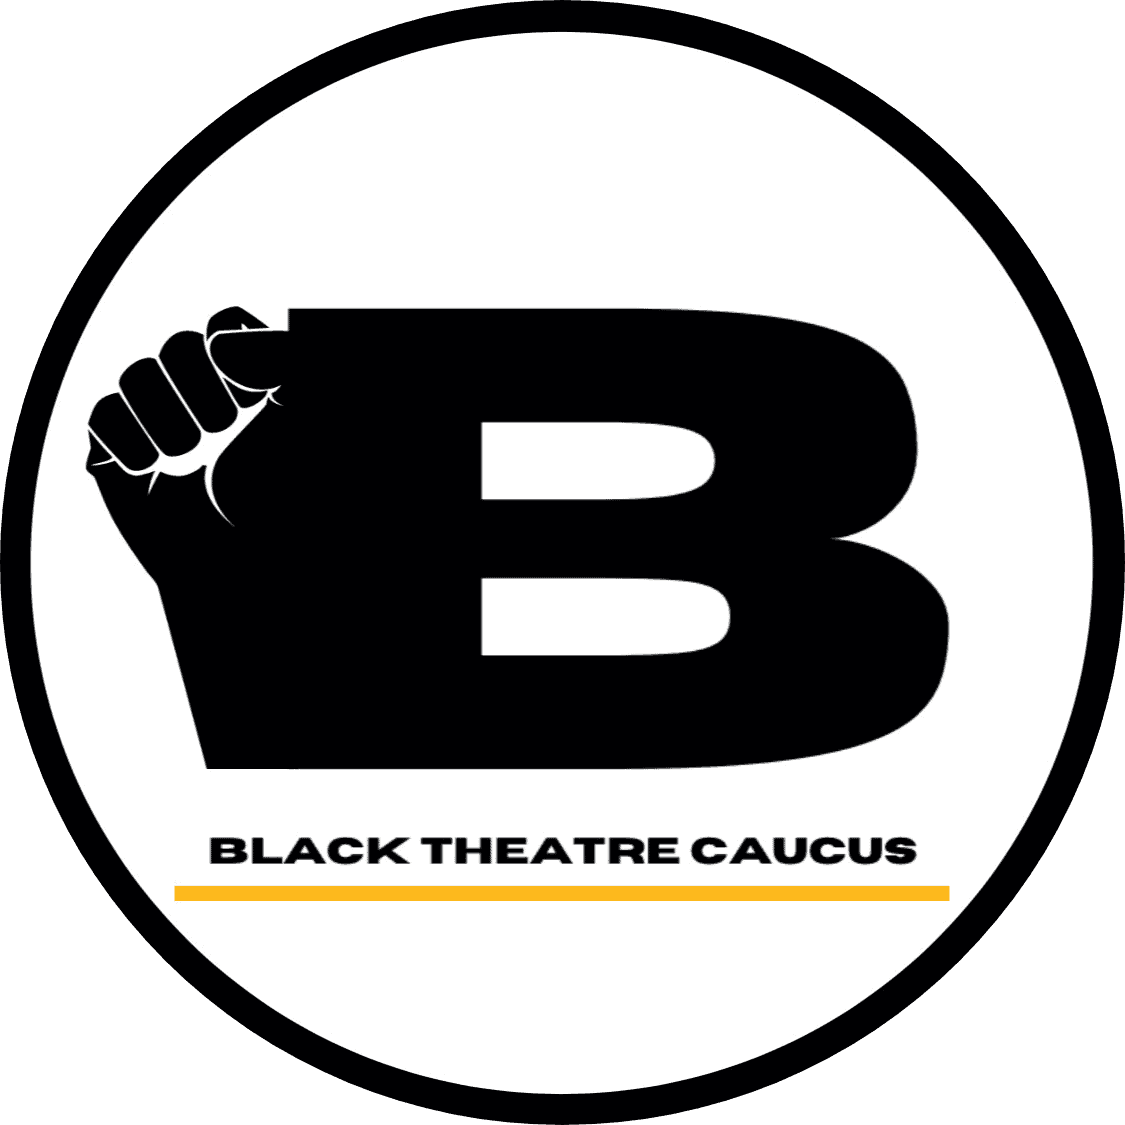 Black Theatre Caucus